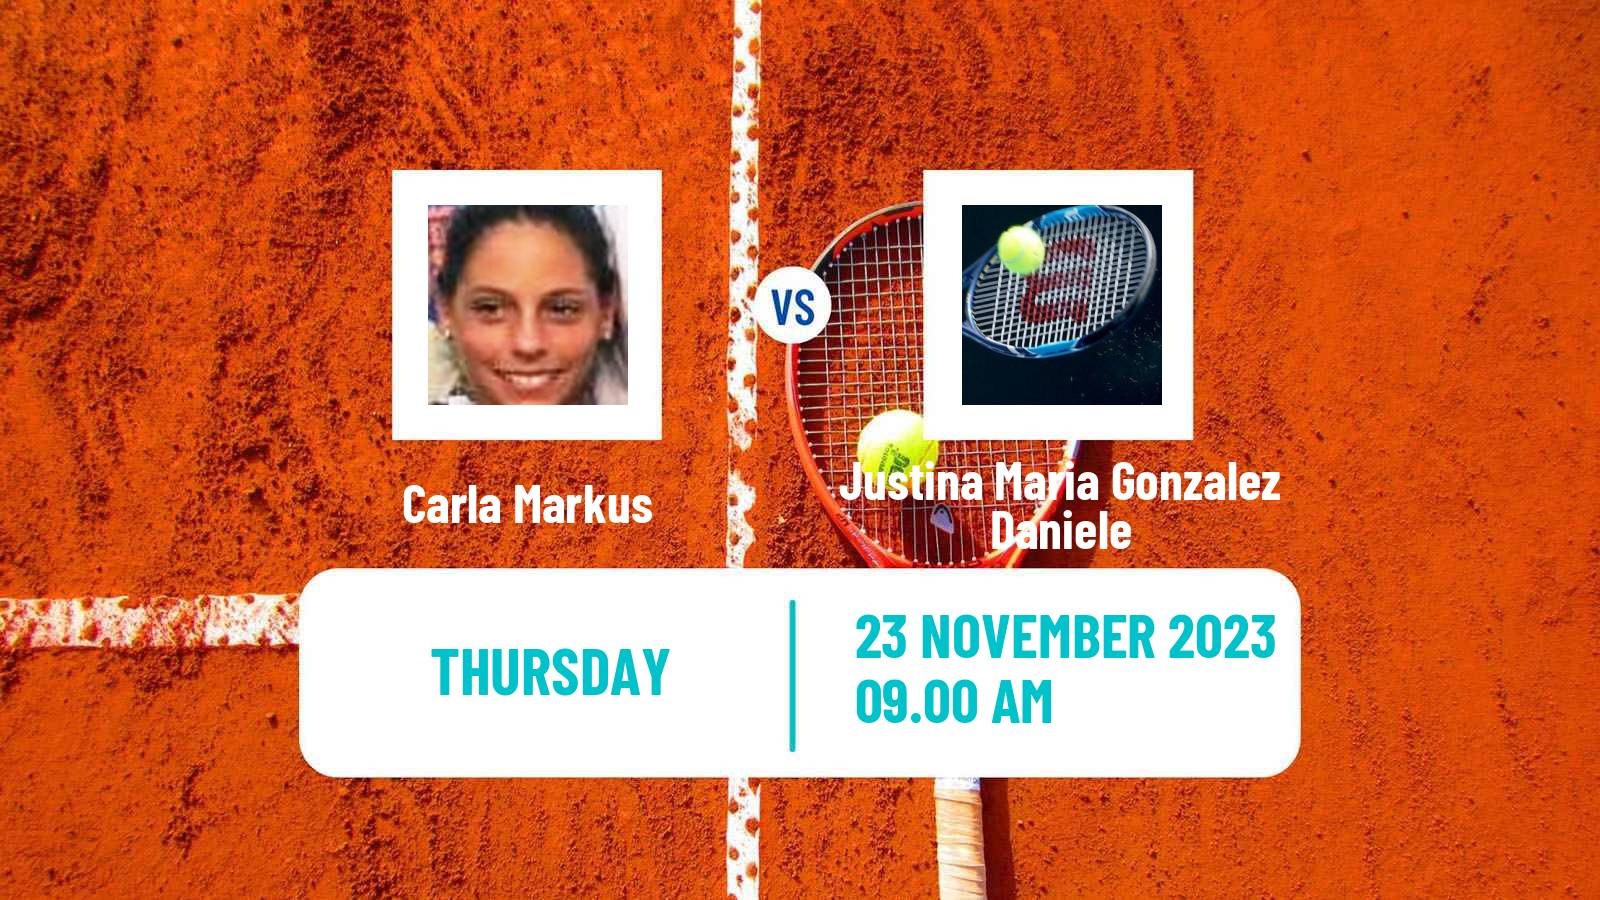 Tennis ITF W15 Cordoba Women Carla Markus - Justina Maria Gonzalez Daniele